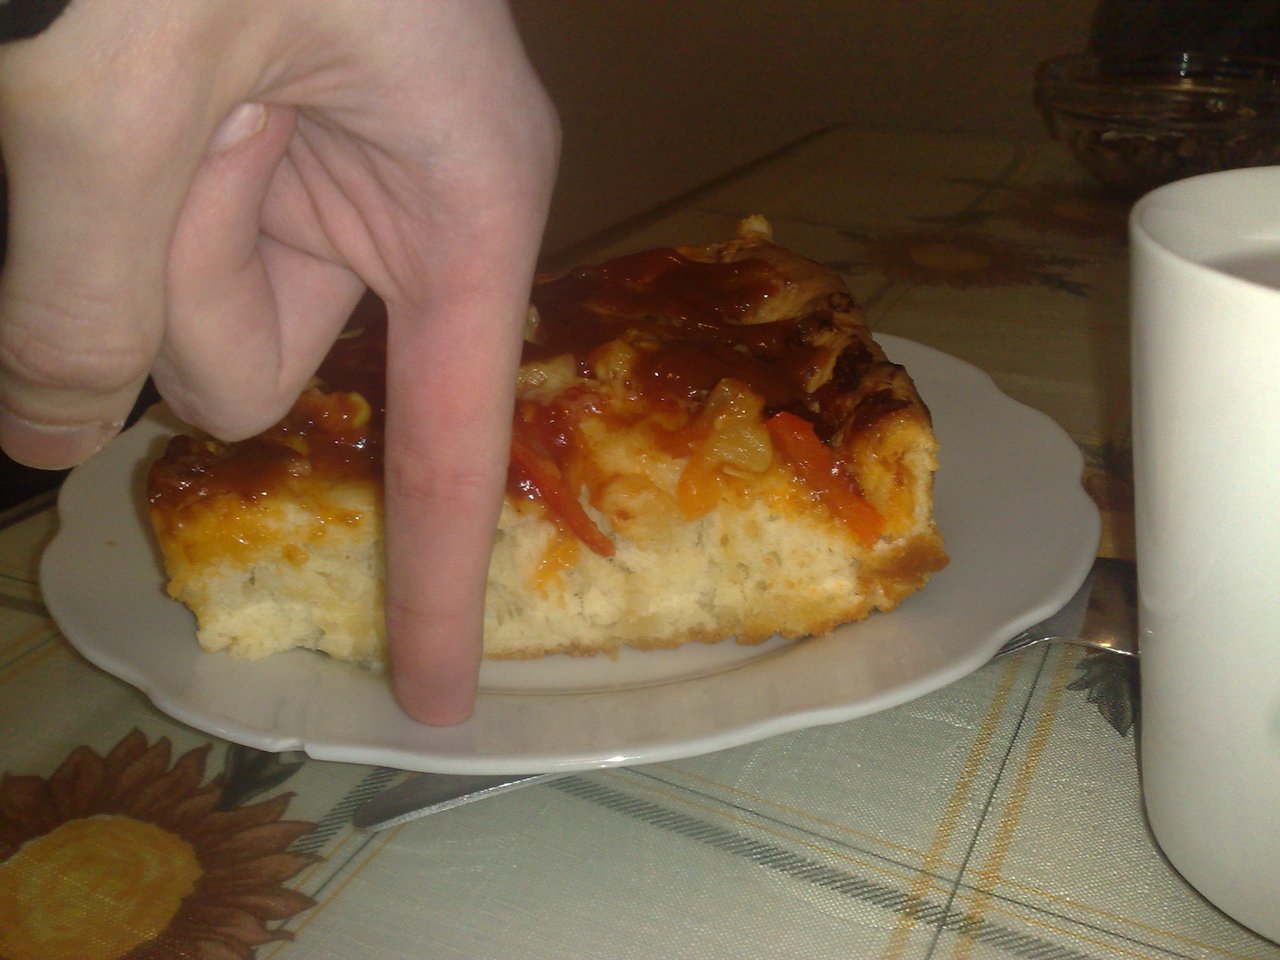 tak prehladávam externý hdd a našiel som exkluzívnu internátnu pizzu 2cm cesto,kečup,lečo! :D 